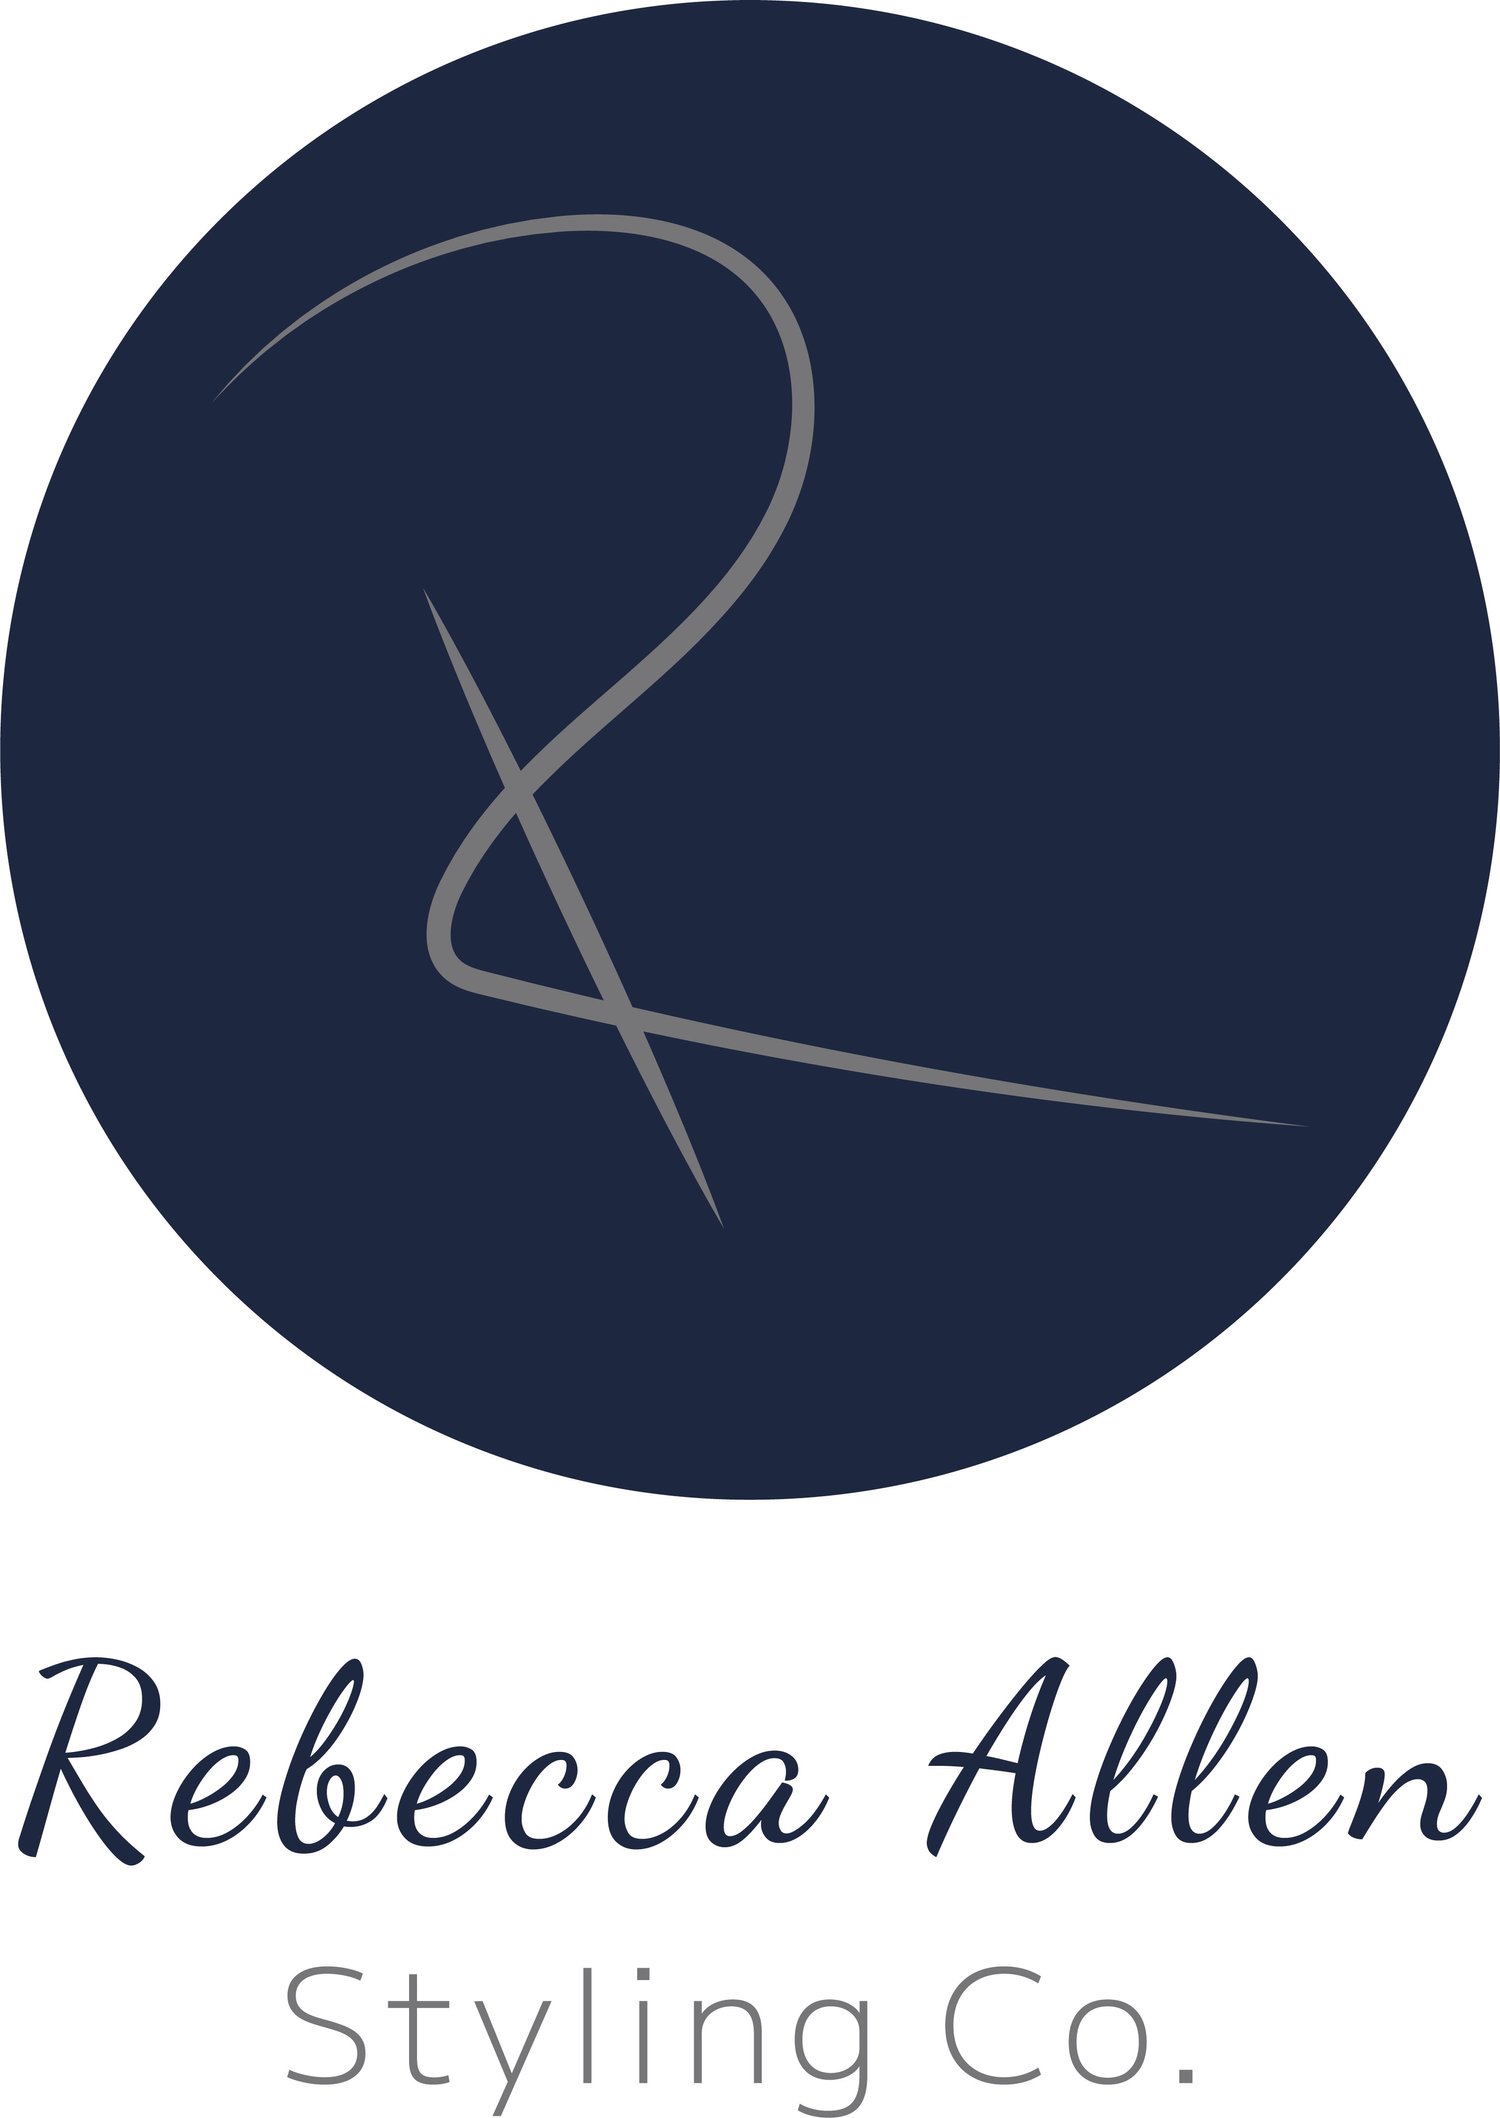 Rebecca Allen Styling Co. 